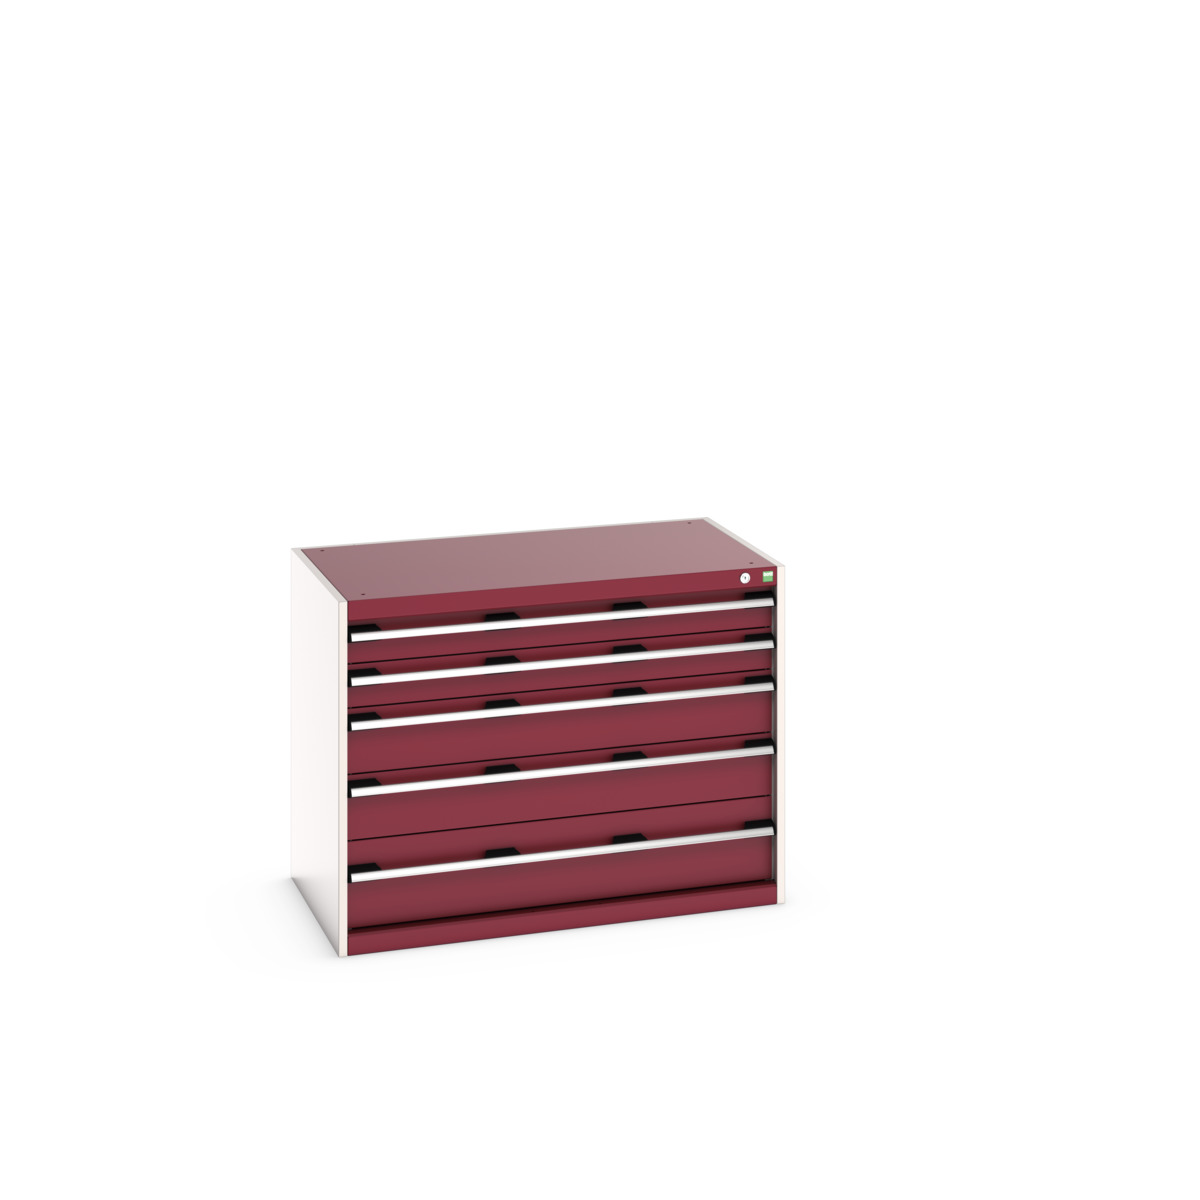 40021010.24V - cubio drawer cabinet